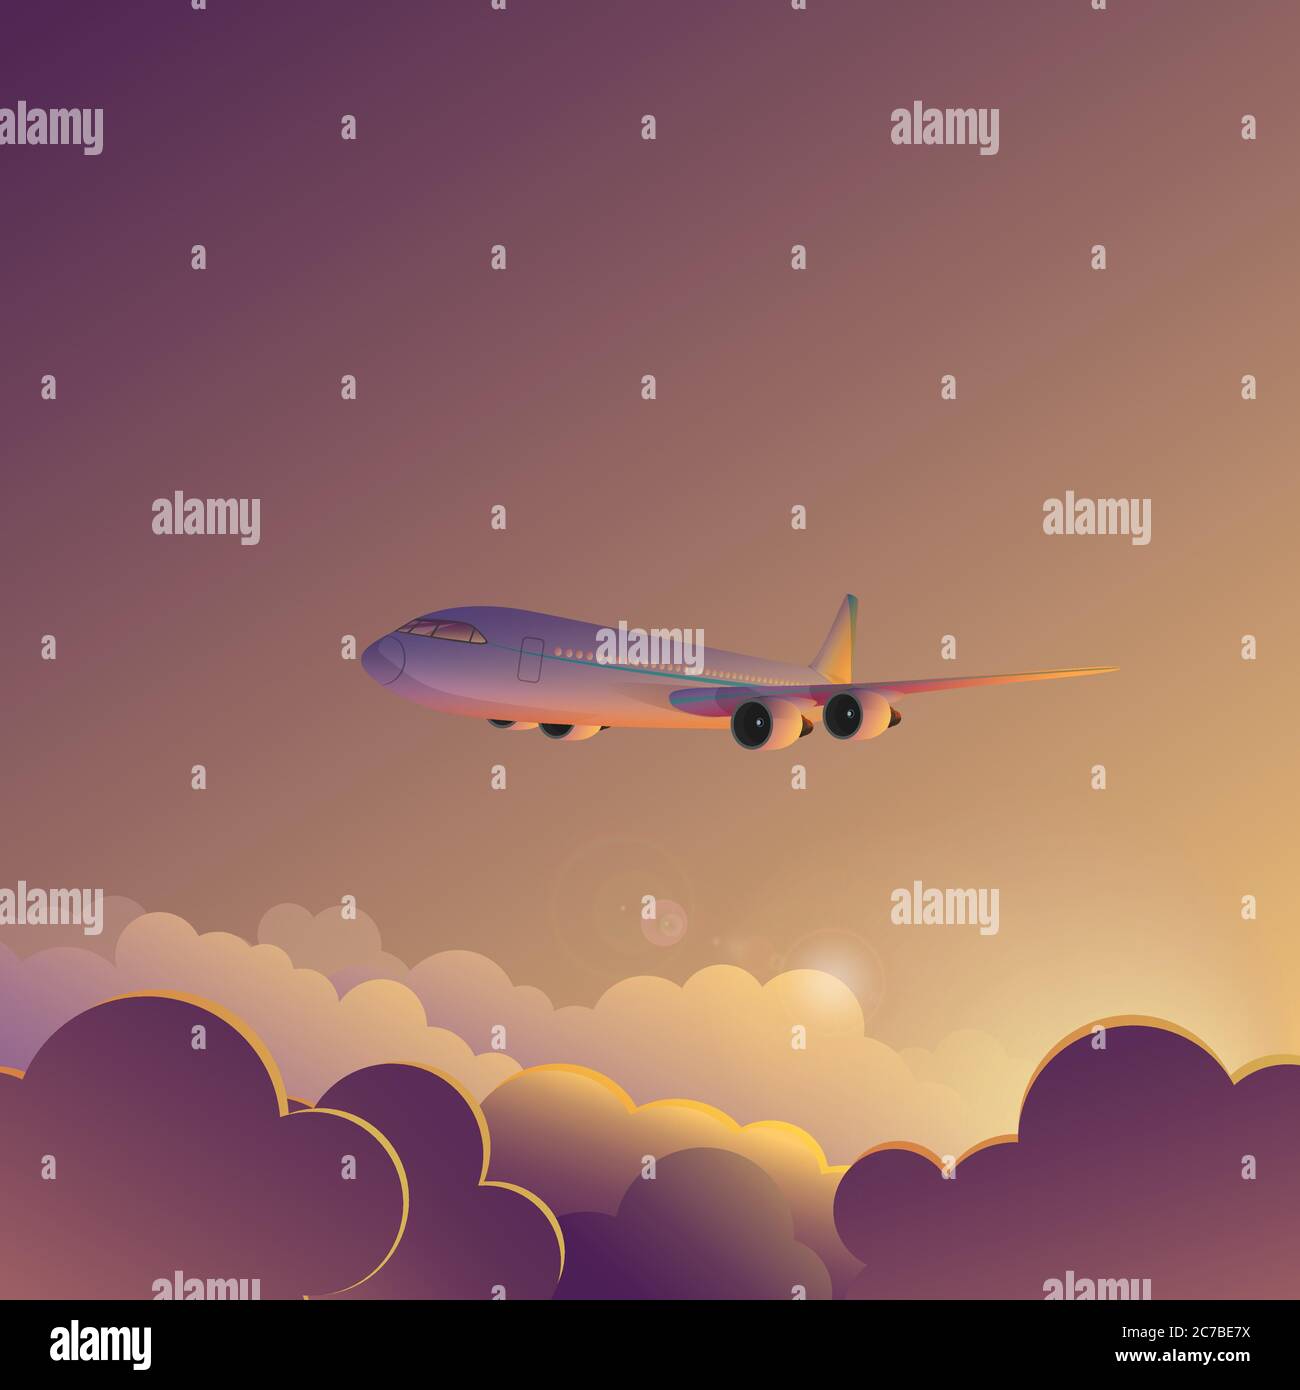 Airplane in sunset sunrise sky vector illustration poster banner Stock Vector